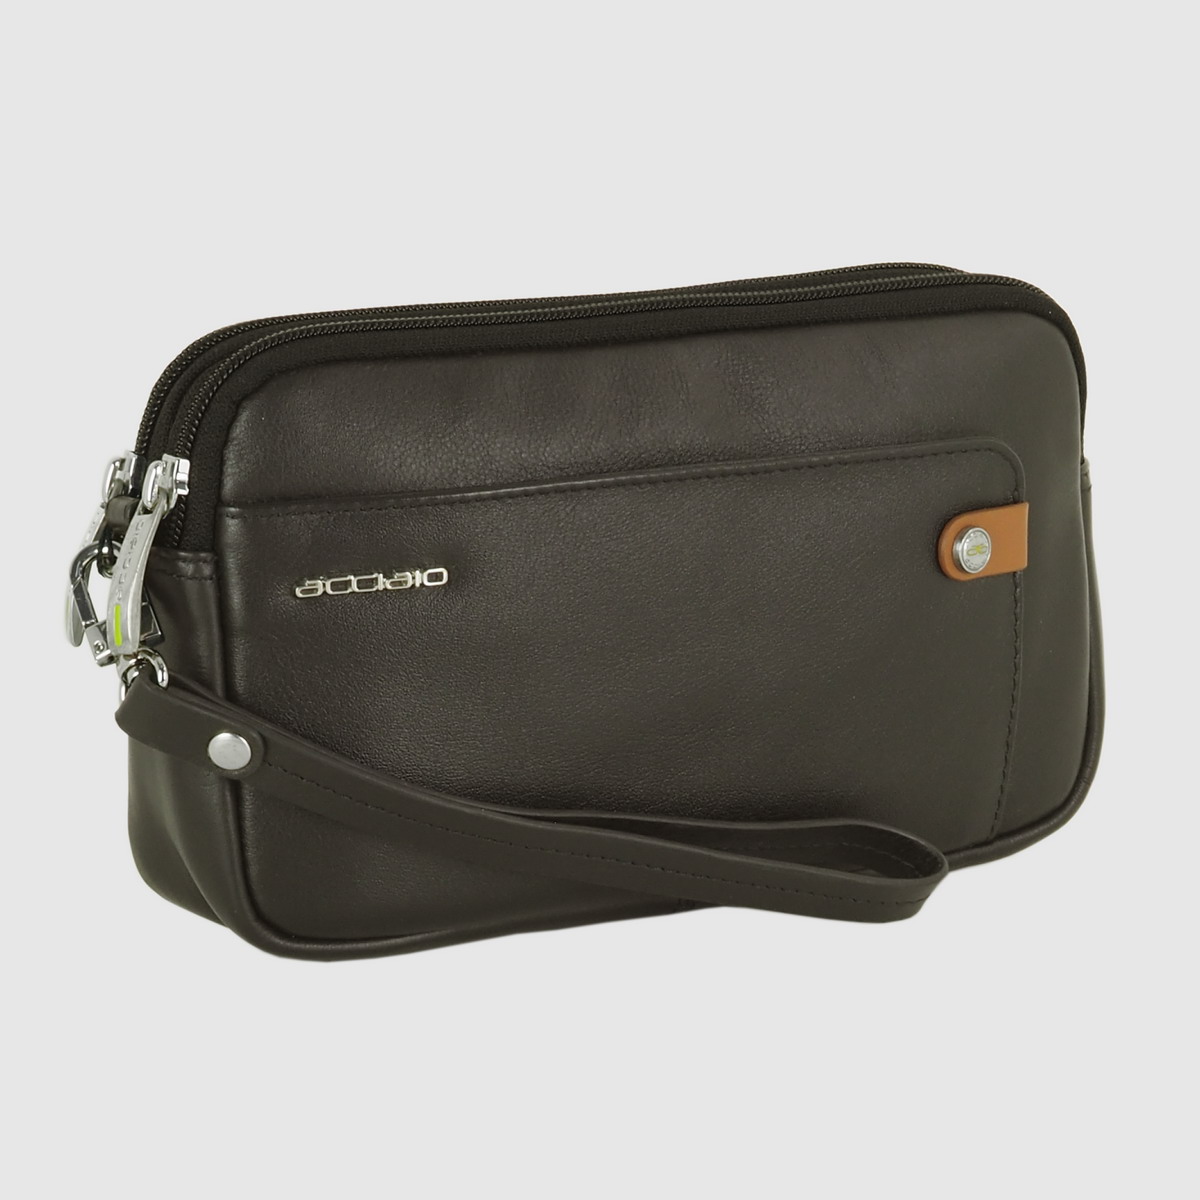 men's wrist bag handbag with 2 zip in leather brown